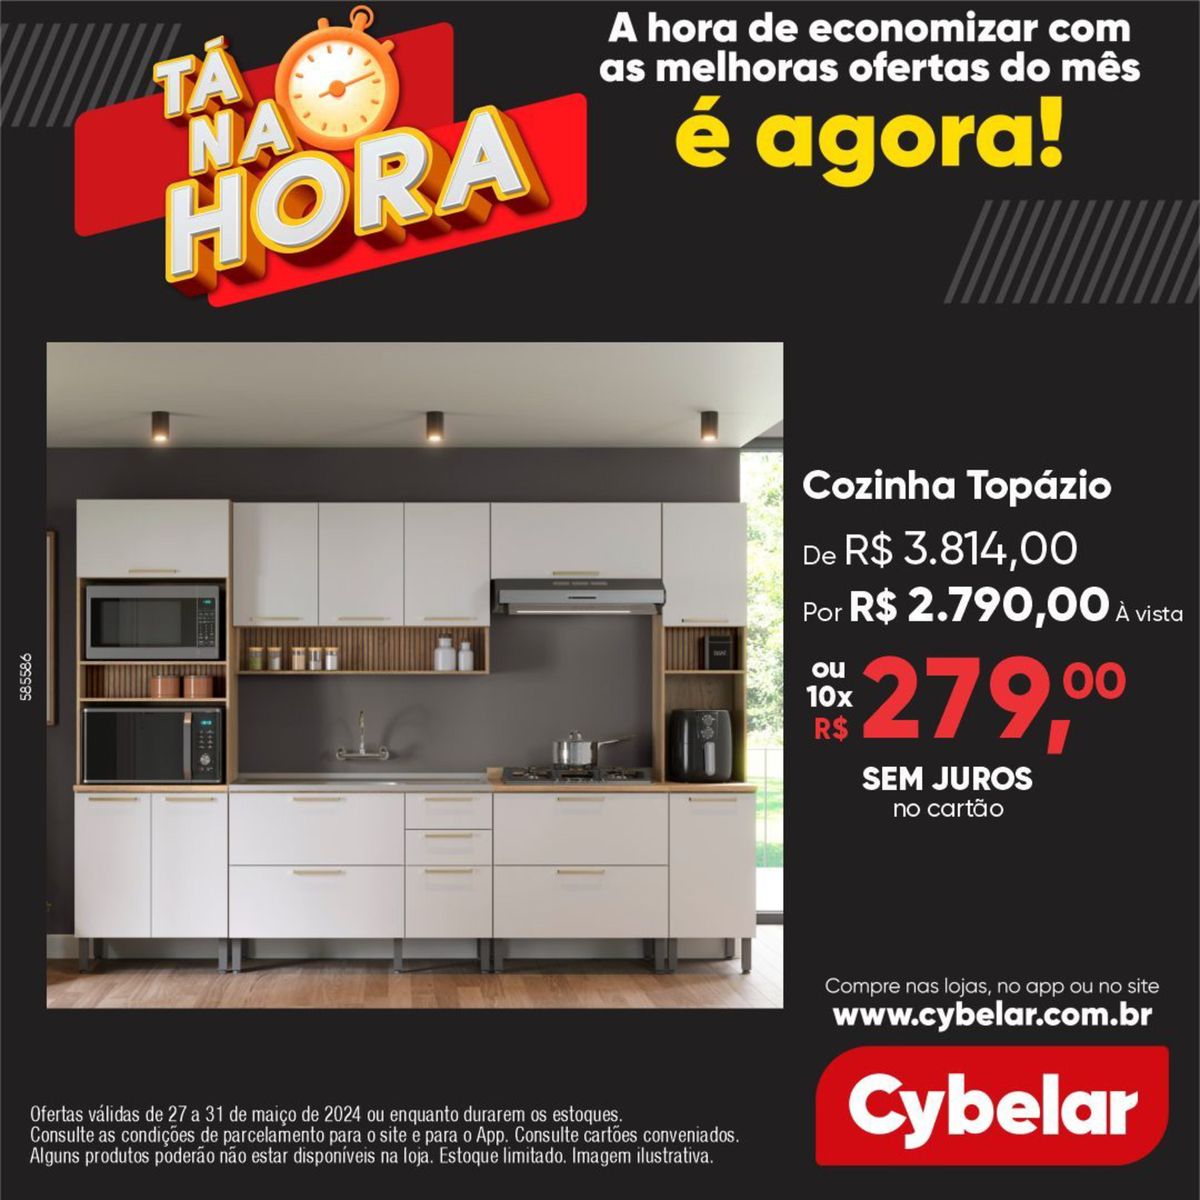 Cozinha Topázio por R$ 2.790,00